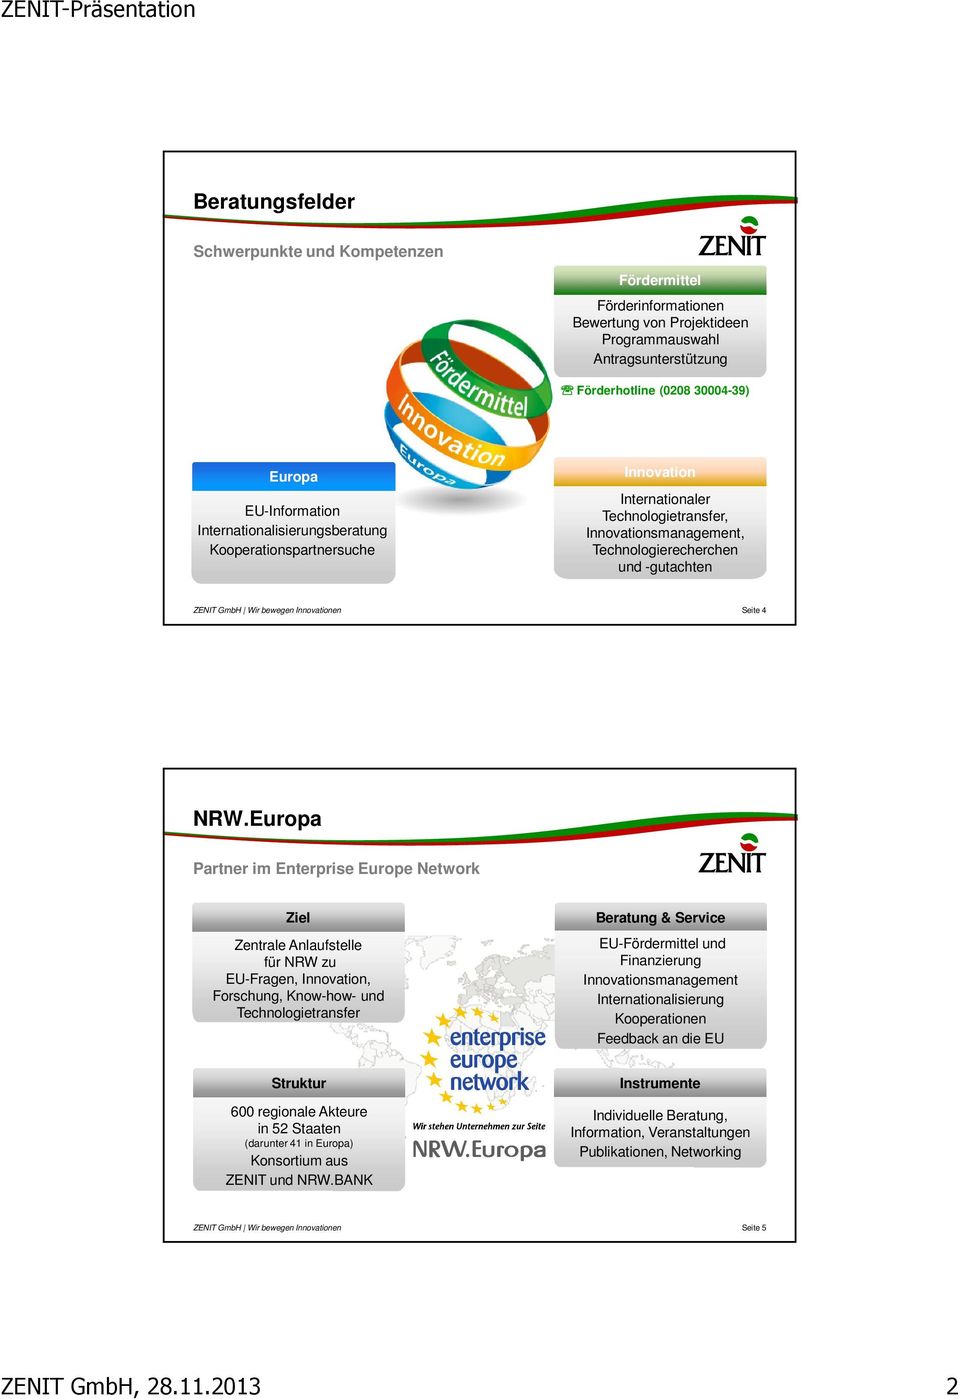 Europa Partner im Enterprise Europe Network Ziel Zentrale Anlaufstelle für NRW zu EU-Fragen, Innovation, Forschung, Know-how- und Technologietransfer Beratung & Service EU-Fördermittel und